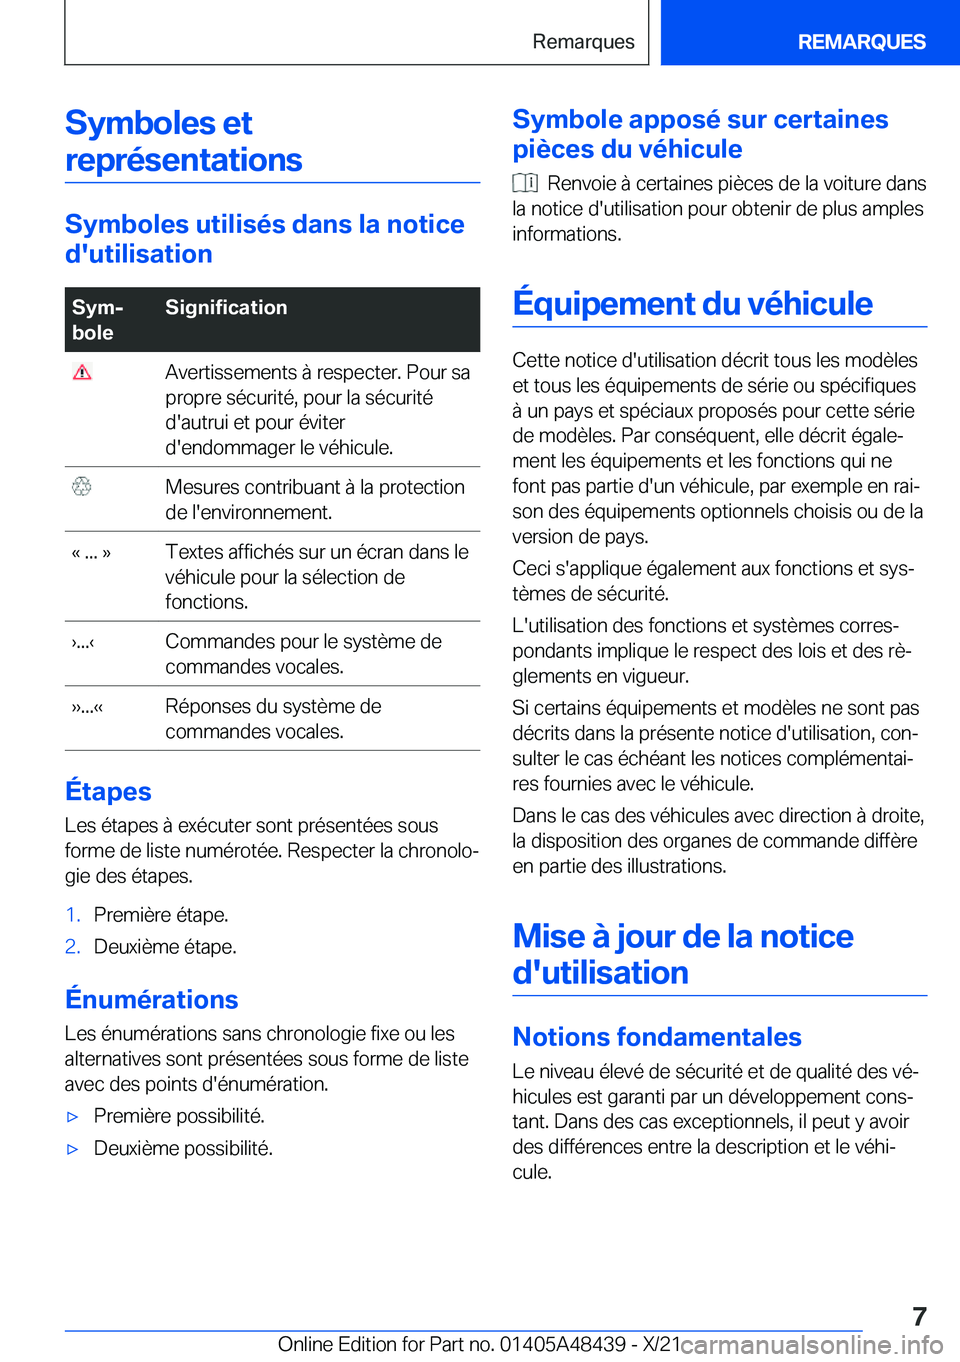 BMW X7 2022  Notices Demploi (in French) �S�y�m�b�o�l�e�s��e�t�r�e�p�r�é�s�e�n�t�a�t�i�o�n�s
�S�y�m�b�o�l�e�s��u�t�i�l�i�s�é�s��d�a�n�s��l�a��n�o�t�i�c�e
�d�'�u�t�i�l�i�s�a�t�i�o�n
�S�y�mj
�b�o�l�e�S�i�g�n�i�f�i�c�a�t�i�o�n��A�v